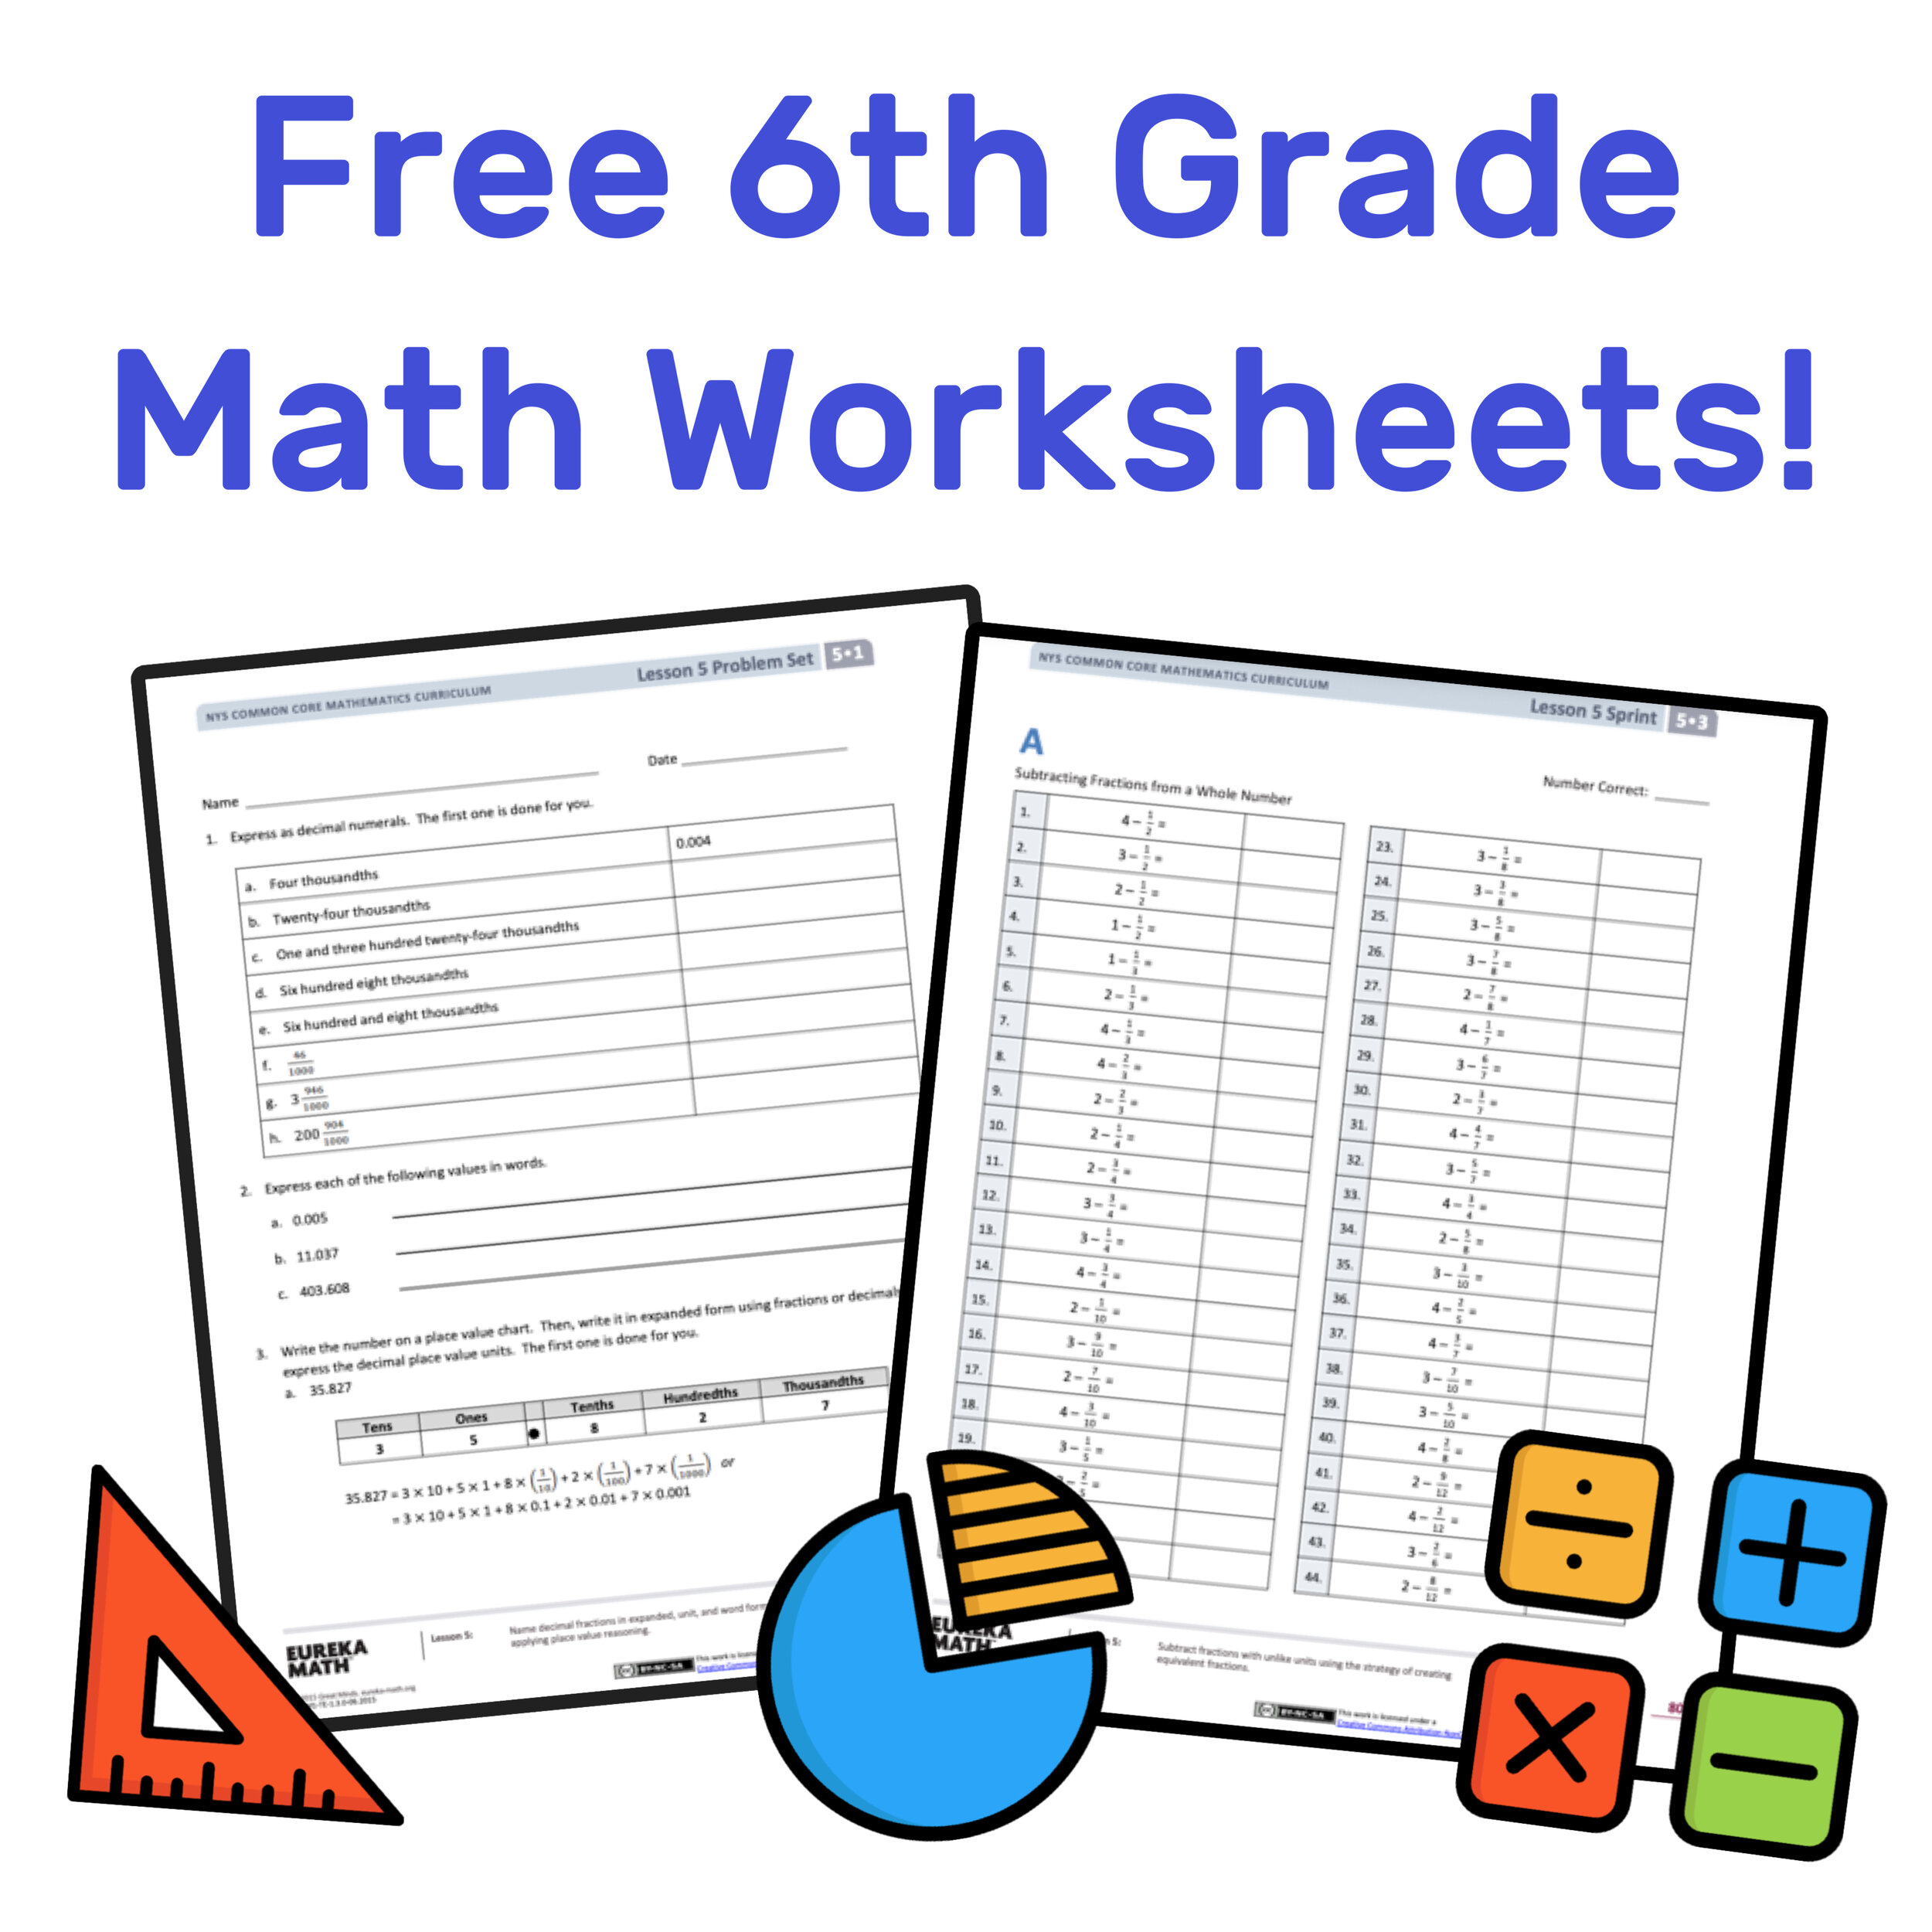 6th grade math worksheets free